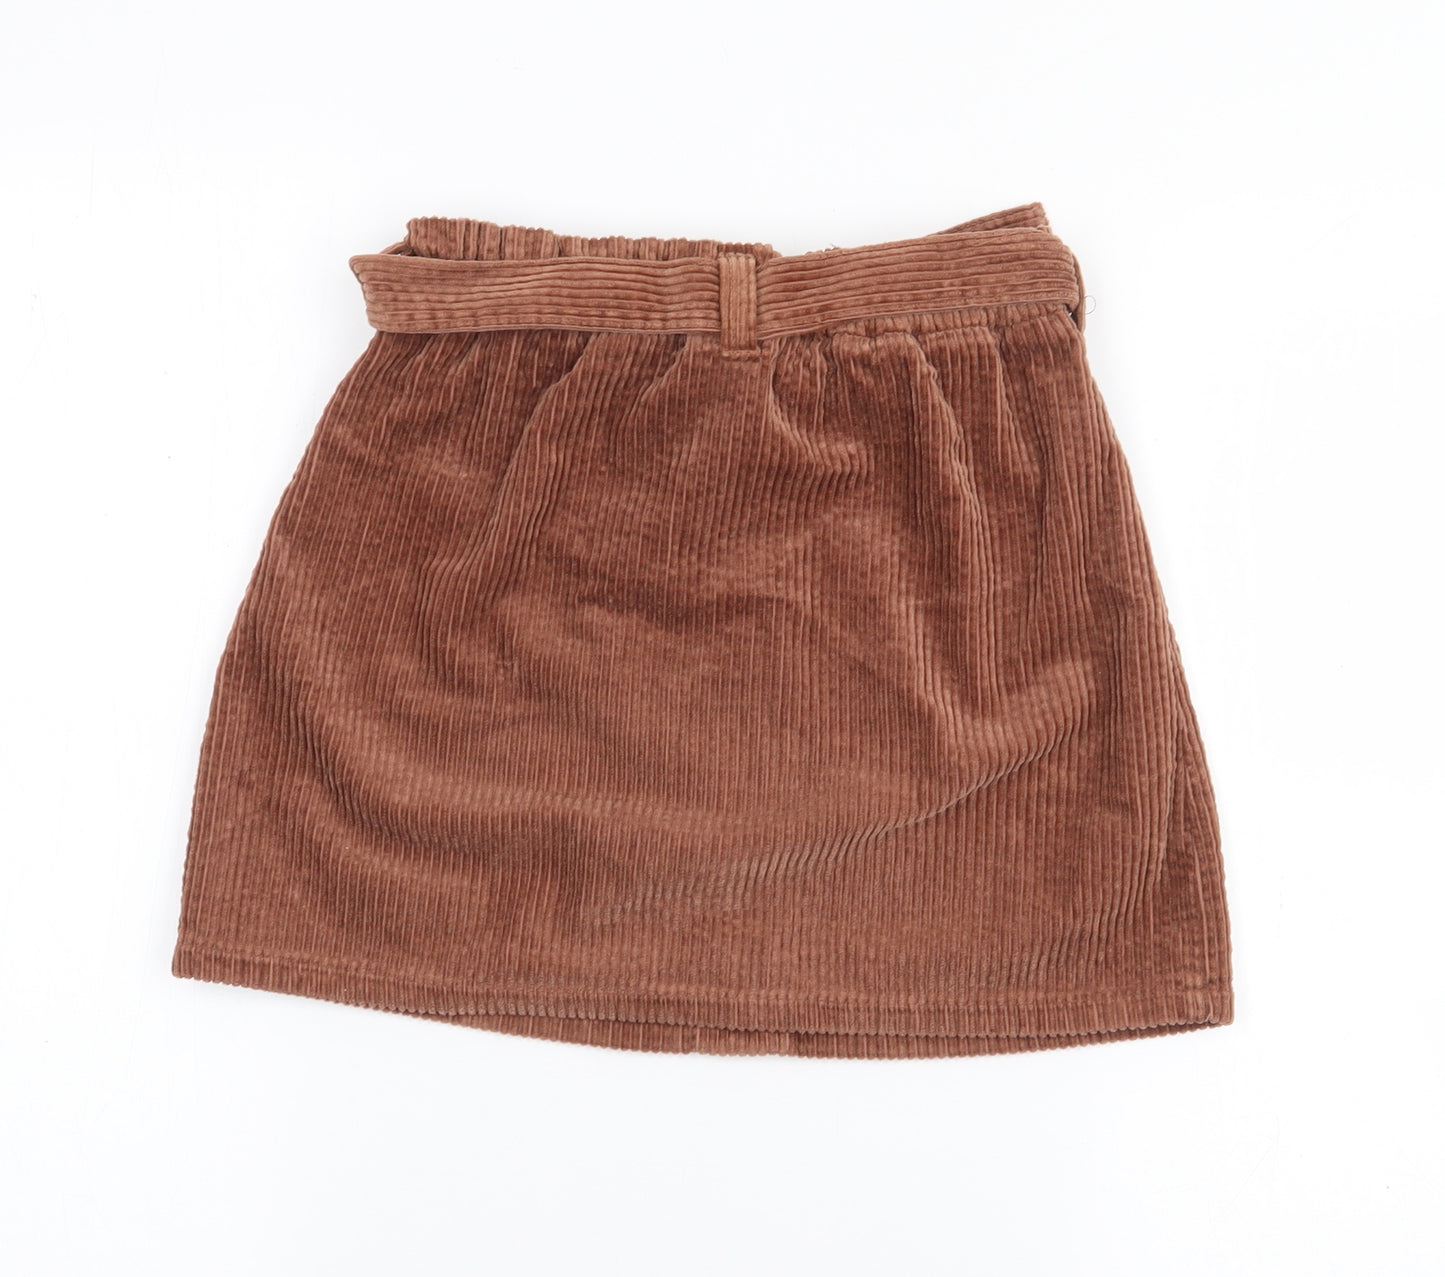 NEXT Girls Brown  Cotton A-Line Skirt Size 8 Years  Regular